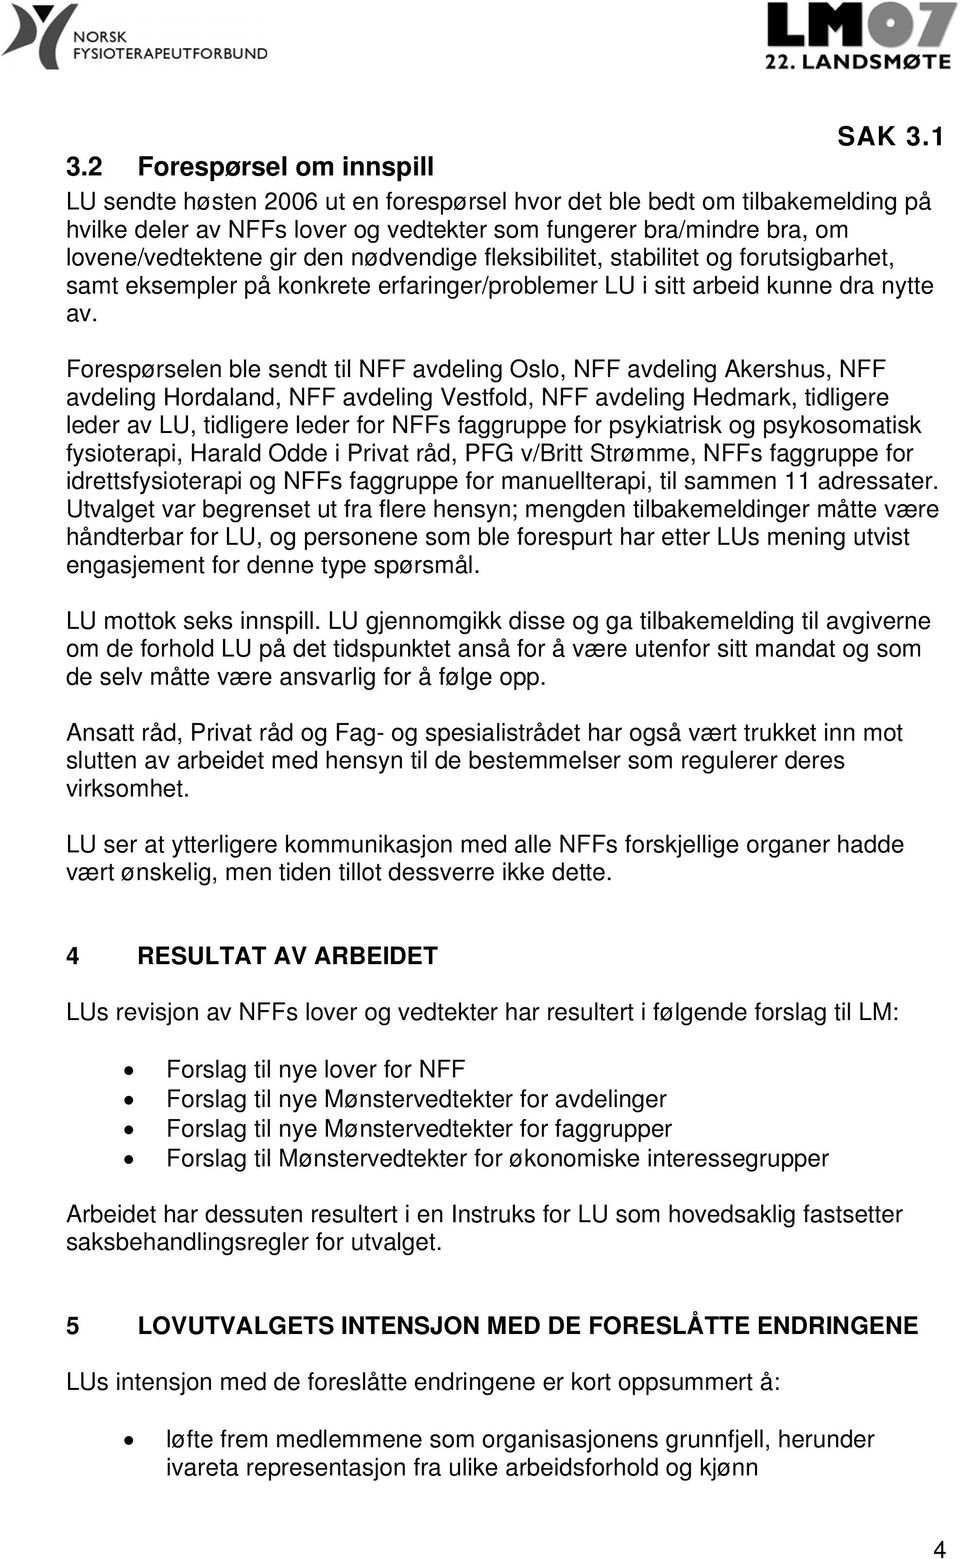 Forespørselen ble sendt til NFF avdeling Oslo, NFF avdeling Akershus, NFF avdeling Hordaland, NFF avdeling Vestfold, NFF avdeling Hedmark, tidligere leder av LU, tidligere leder for NFFs faggruppe